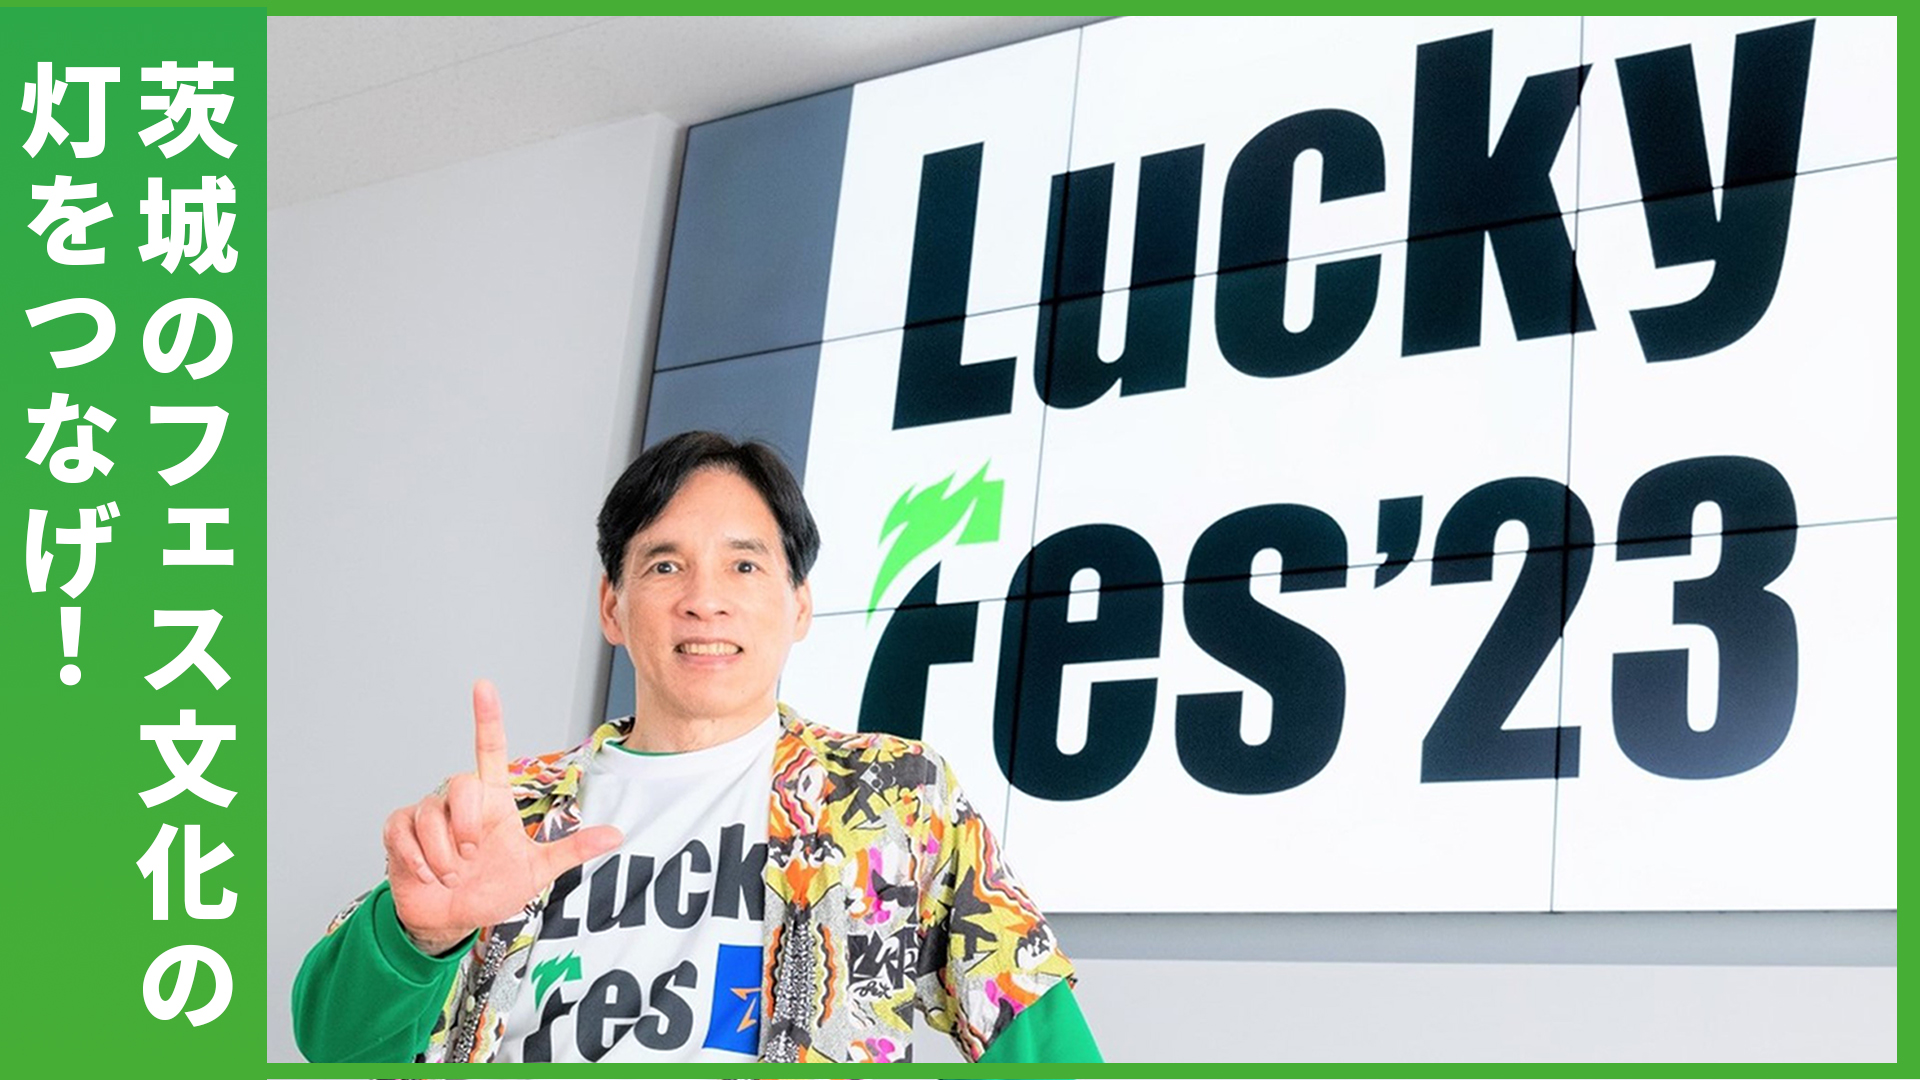 ふるさと茨城を盛り上げたい、その一心で行動し続けた――「LuckyFes」2023年開催へ